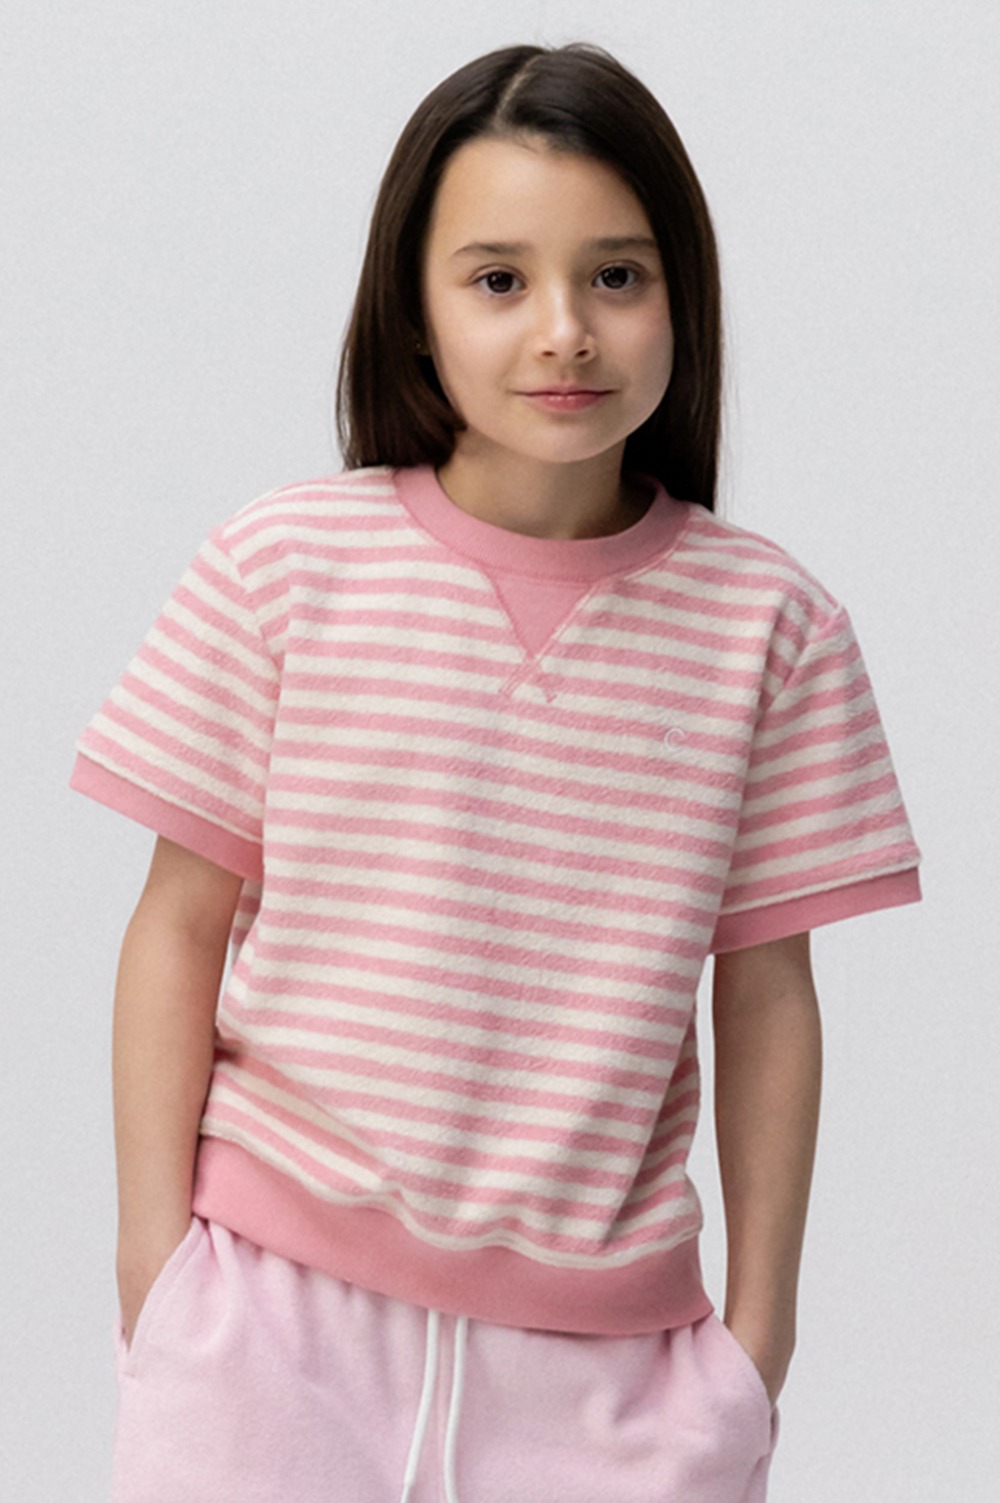 clove - [24SS clove] Candy Stripe Terry T-Shirt_Kids (Pink)